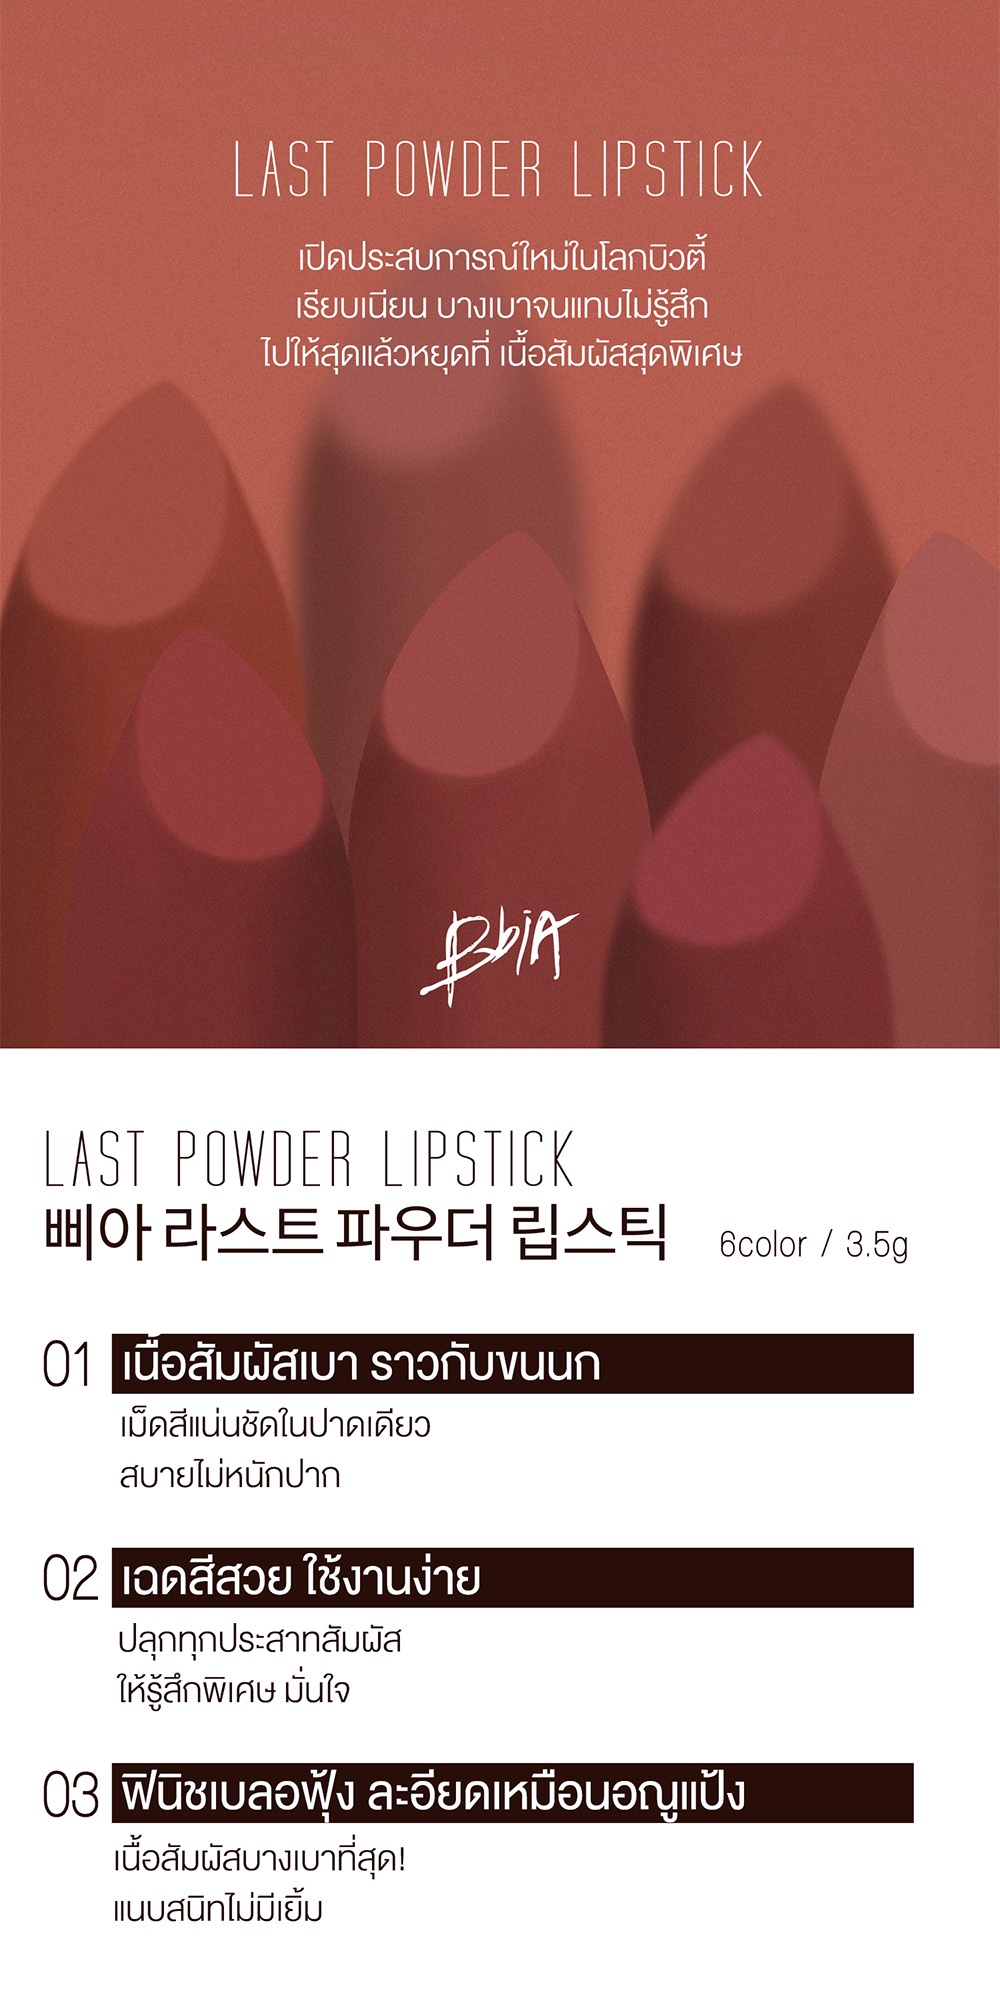 ข้อมูลเกี่ยวกับ Bbia Last Powder Lipstick เปีย (ลิปสติกเนื้อสัมผัสบางเบาดุจแป้ง)